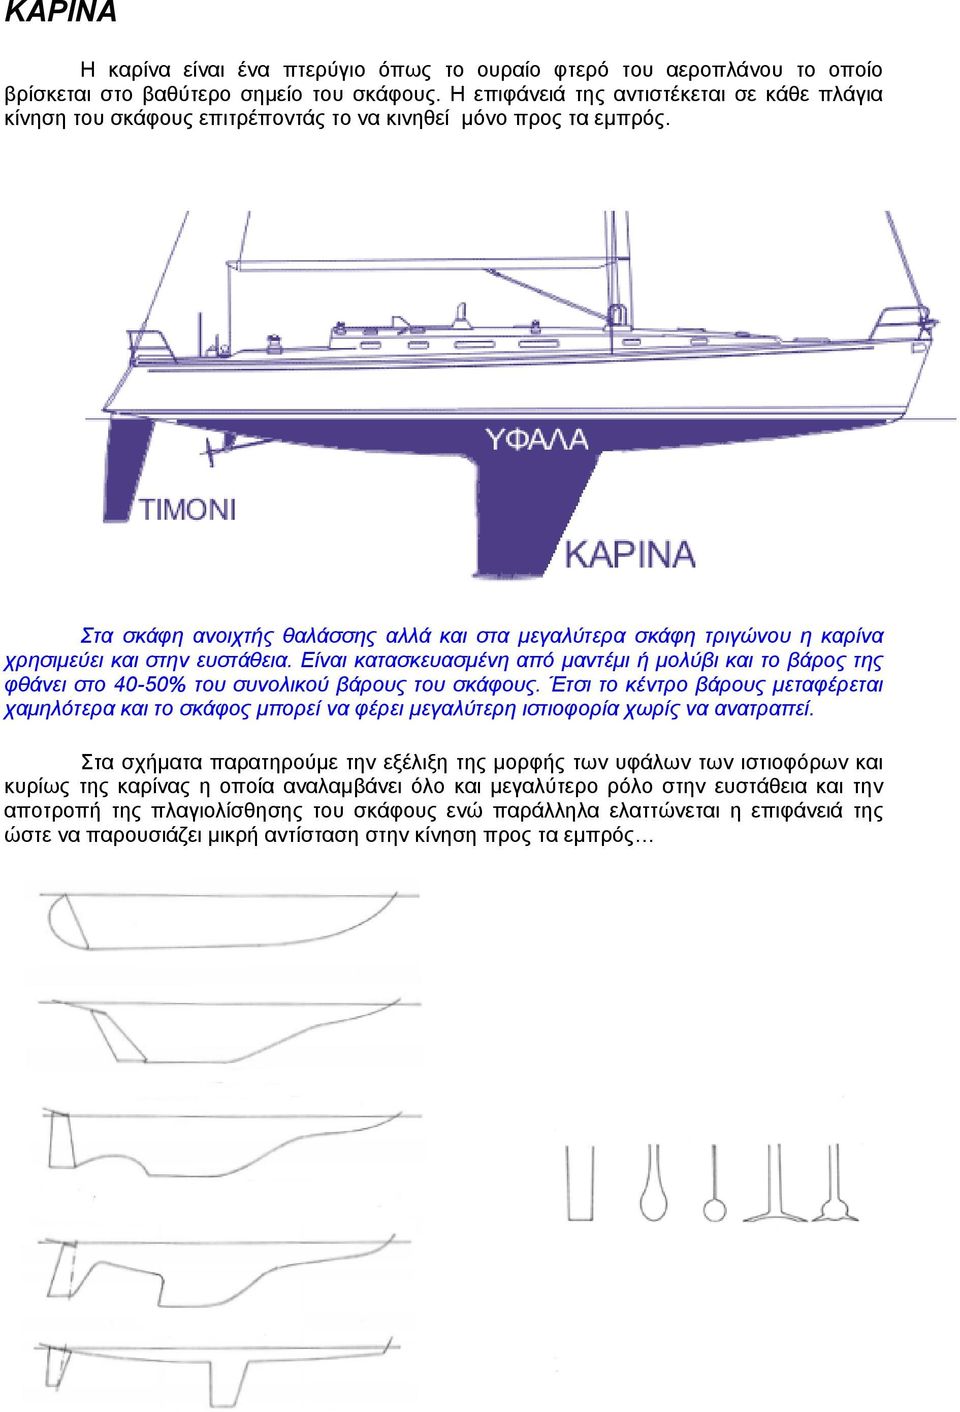 Στα σκάφη ανοιχτής θαλάσσης αλλά και στα μεγαλύτερα σκάφη τριγώνου η καρίνα χρησιμεύει και στην ευστάθεια.